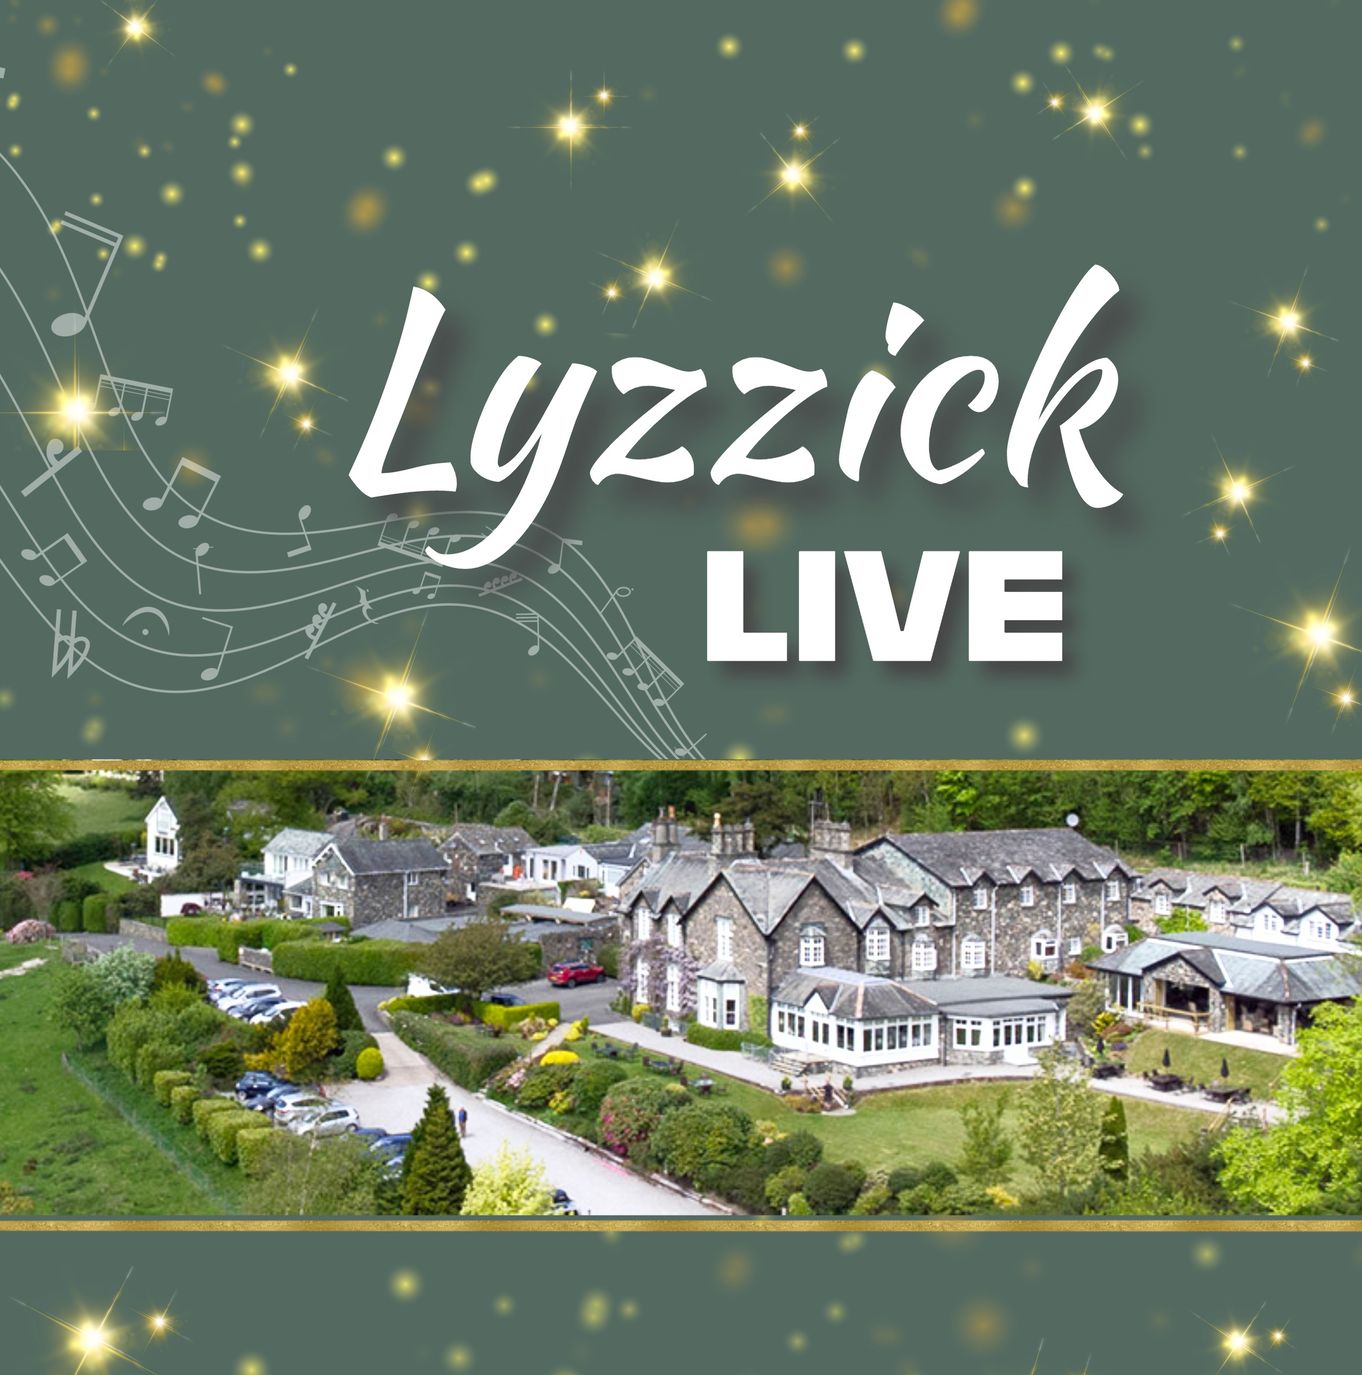 Lyzzick Live